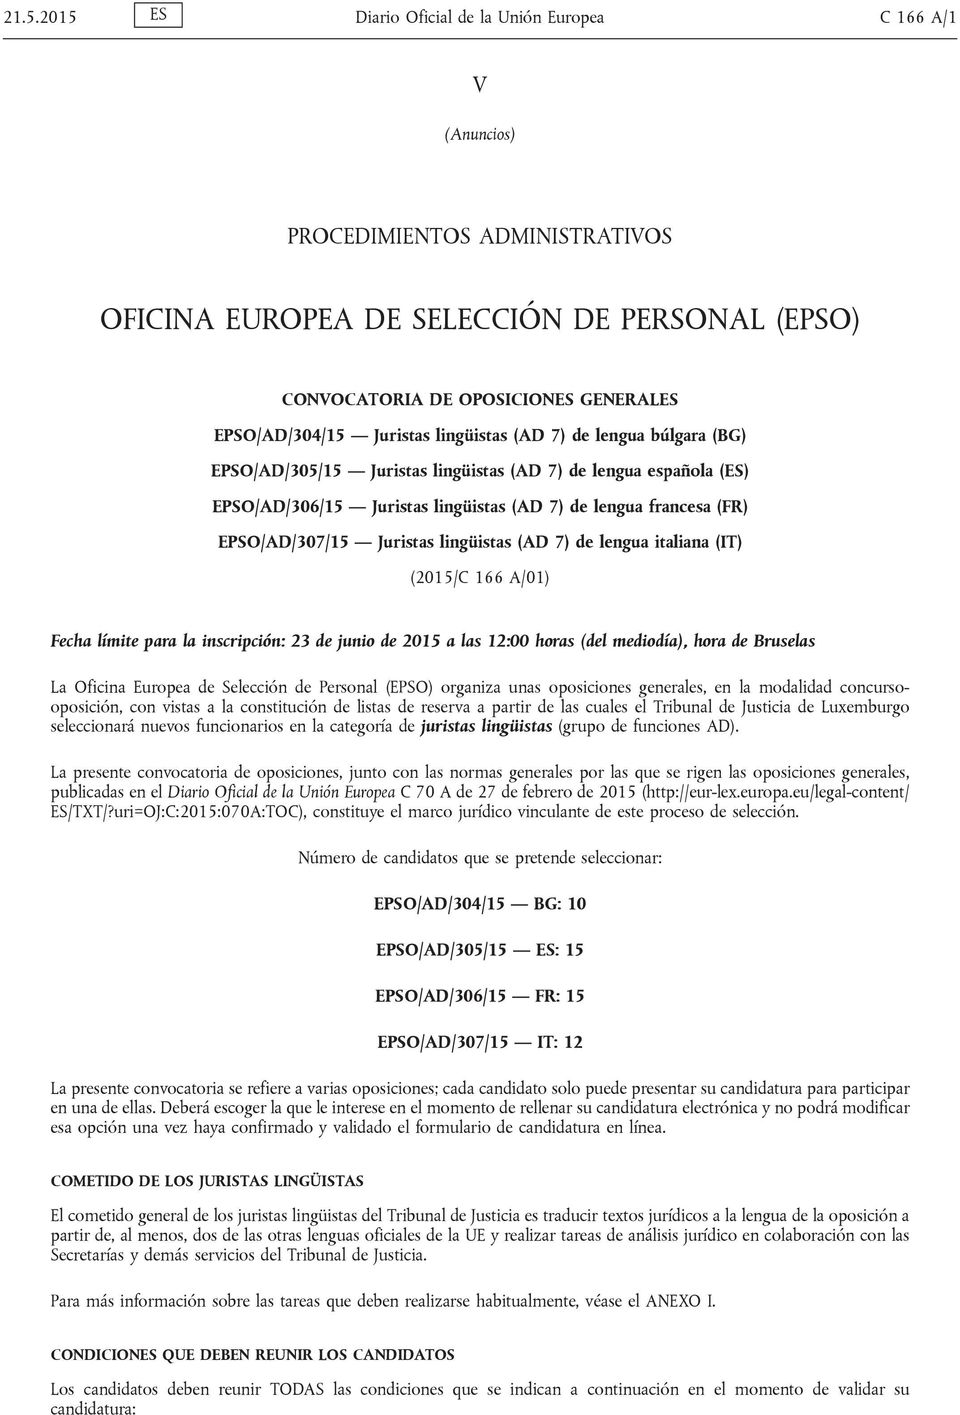 EPSO/AD/307/15 Juristas lingüistas (AD 7) de lengua italiana (IT) (2015/C 166 A/01) Fecha límite para la inscripción: 23 de junio de 2015 a las 12:00 horas (del mediodía), hora de Bruselas La Oficina